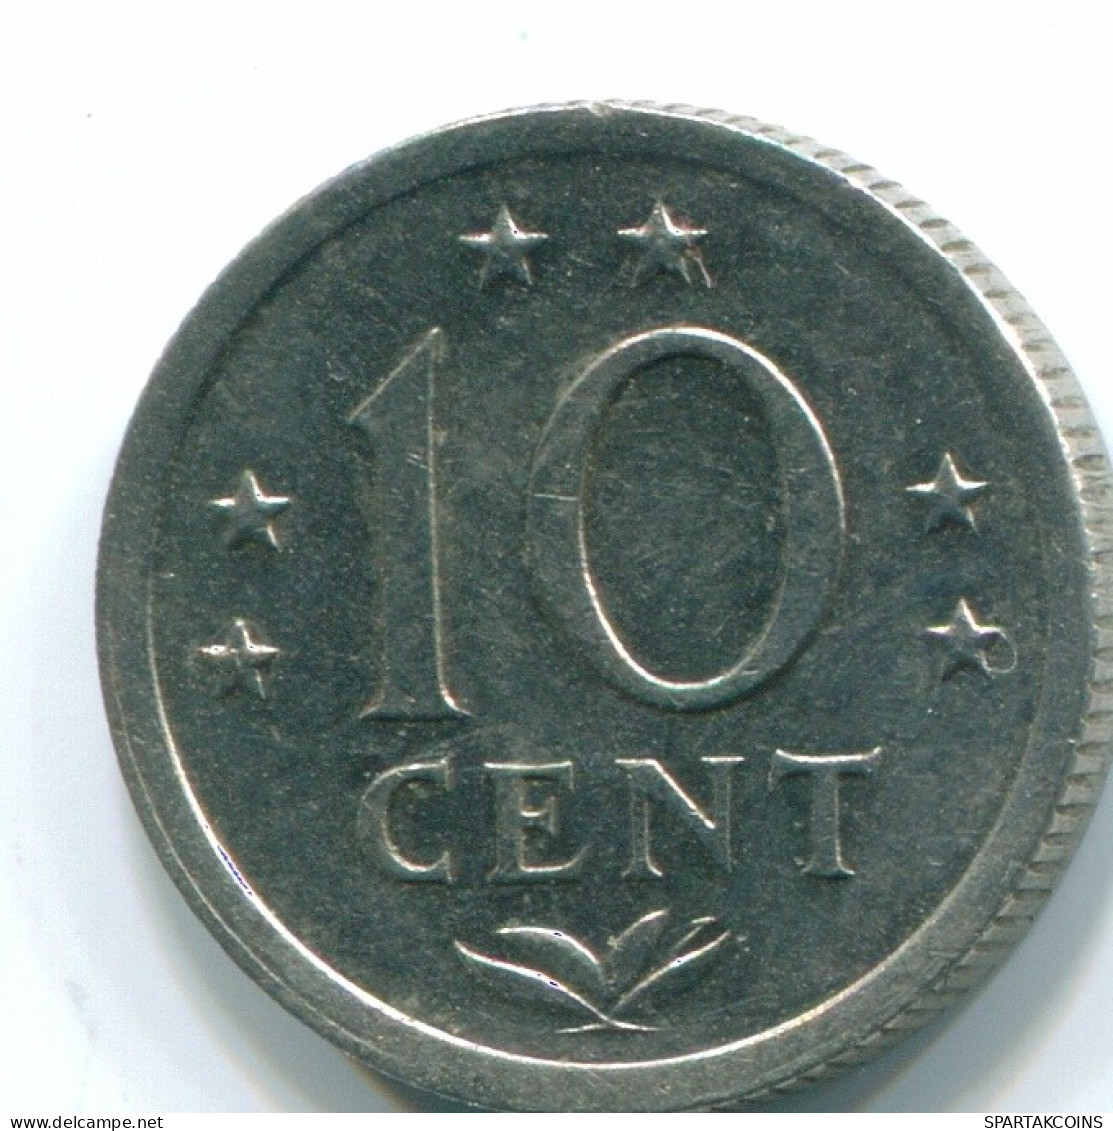 10 CENTS 1971 NIEDERLÄNDISCHE ANTILLEN Nickel Koloniale Münze #S13469.D.A - Antilles Néerlandaises